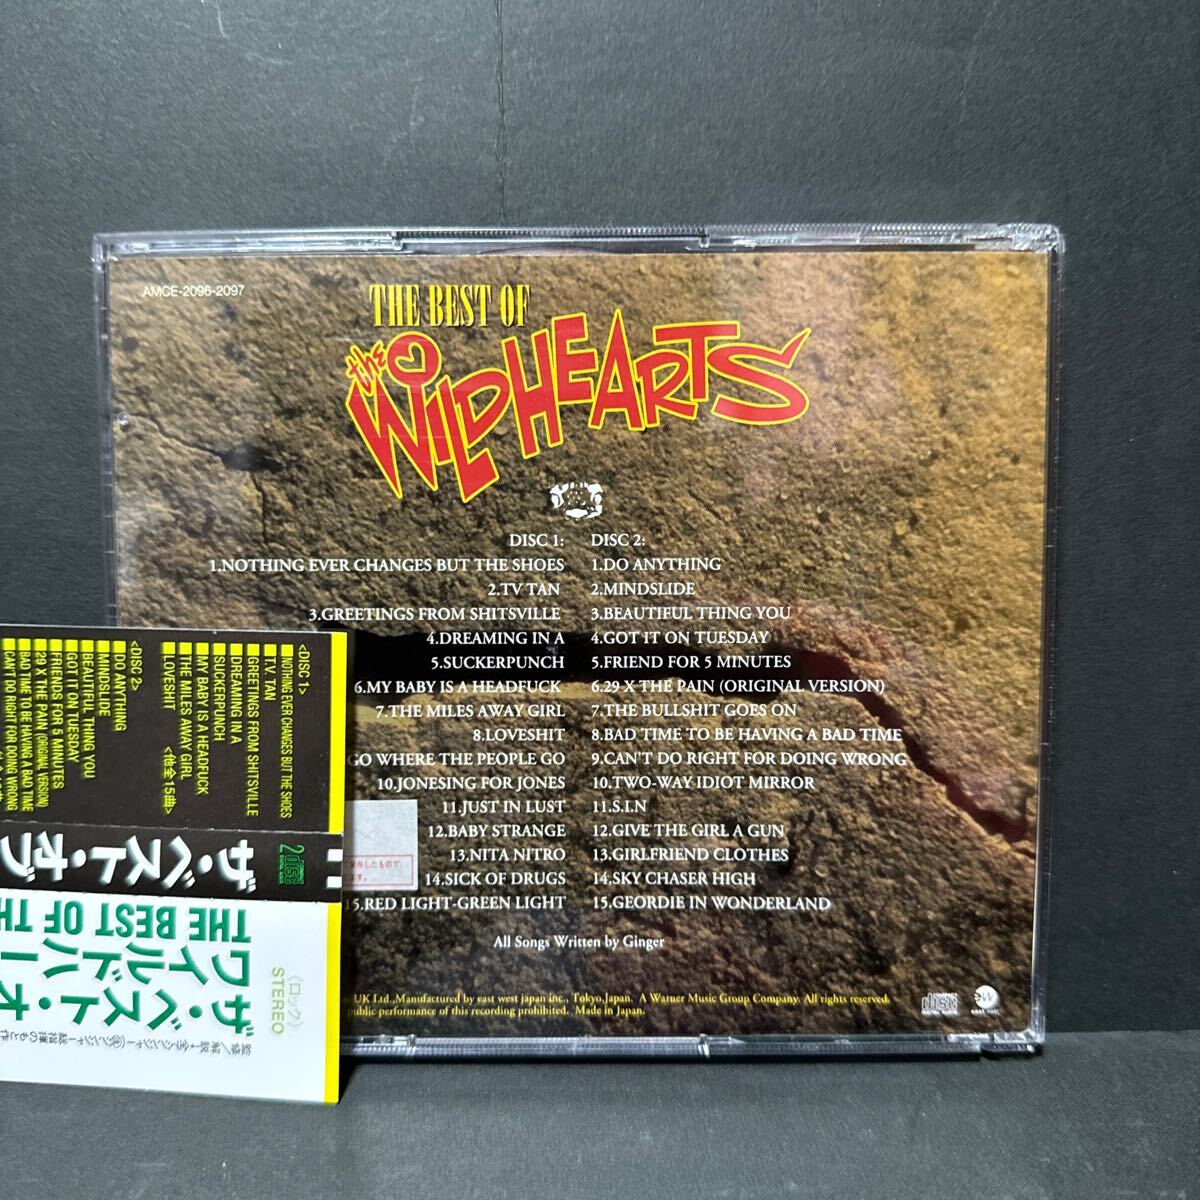 THE WILDHEARTS 国内盤2CD 「ザ・ベスト・オブ〜」_画像2